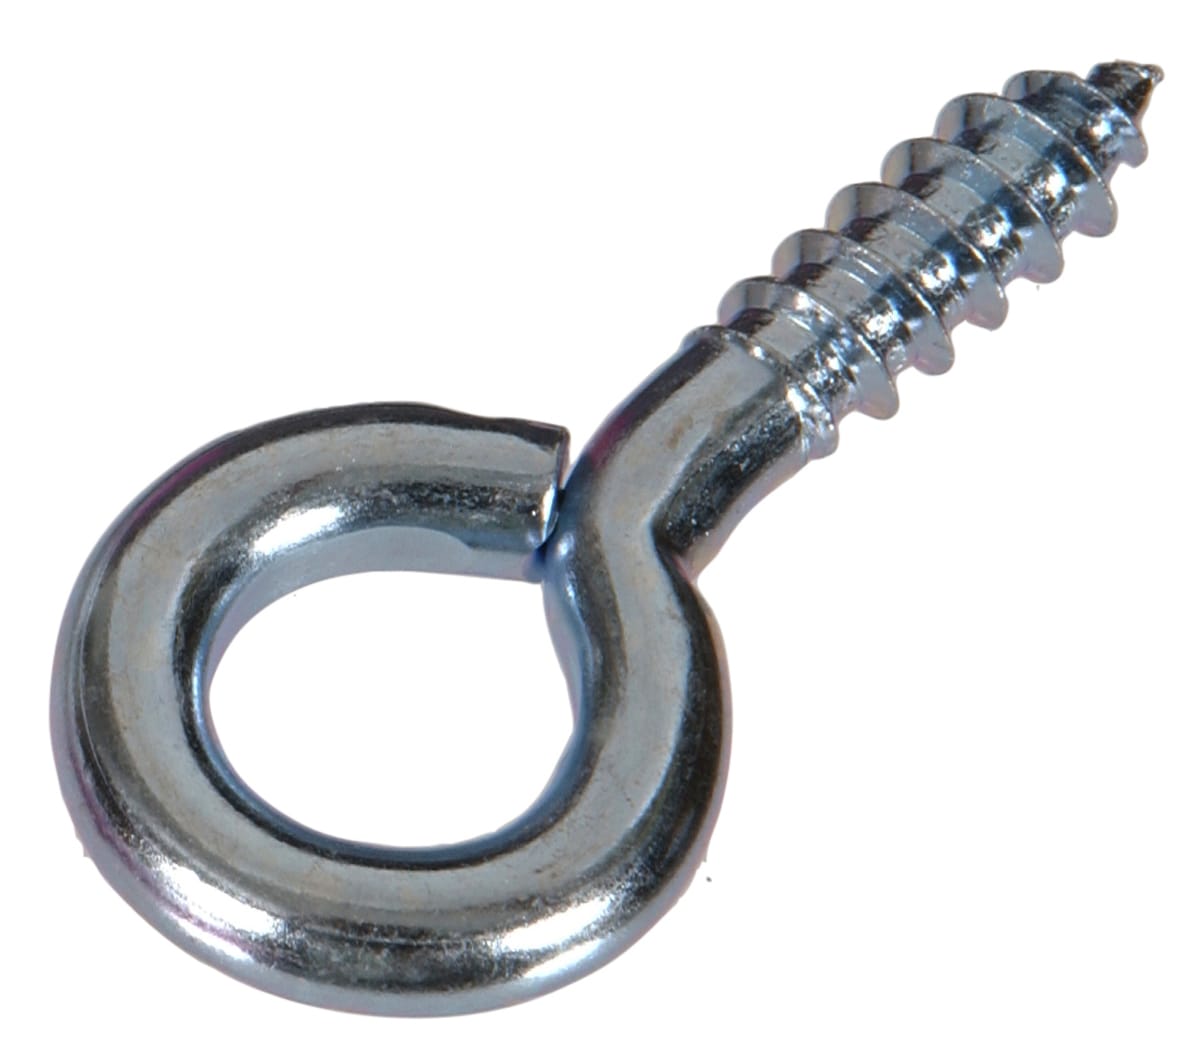 DuraSteel 0.125-in Black Steel Screw Eye Hook in the Hooks department at